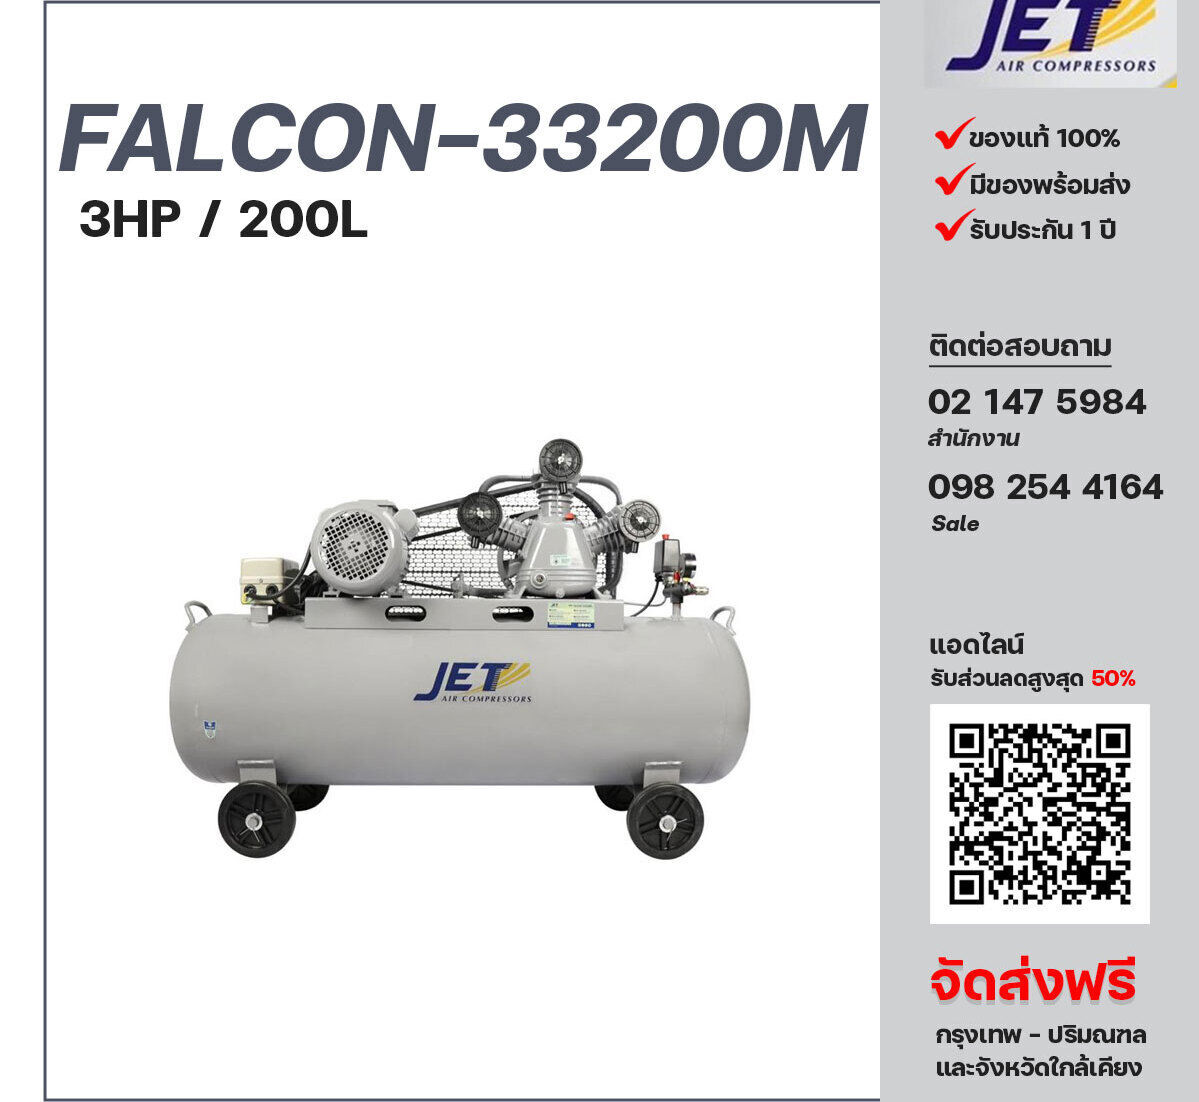 ปั๊มลมเจ็ท JET รุ่น FALCON-33200M 220V ปั๊มลมลูกสูบ ขนาด 3 สูบ 3  แรงม้า 220 ลิตร JET พร้อมมอเตอร์ ไฟ 220V ส่งฟรี กรุงเทพฯ-ปริมณฑล รับประกัน 1 ปี